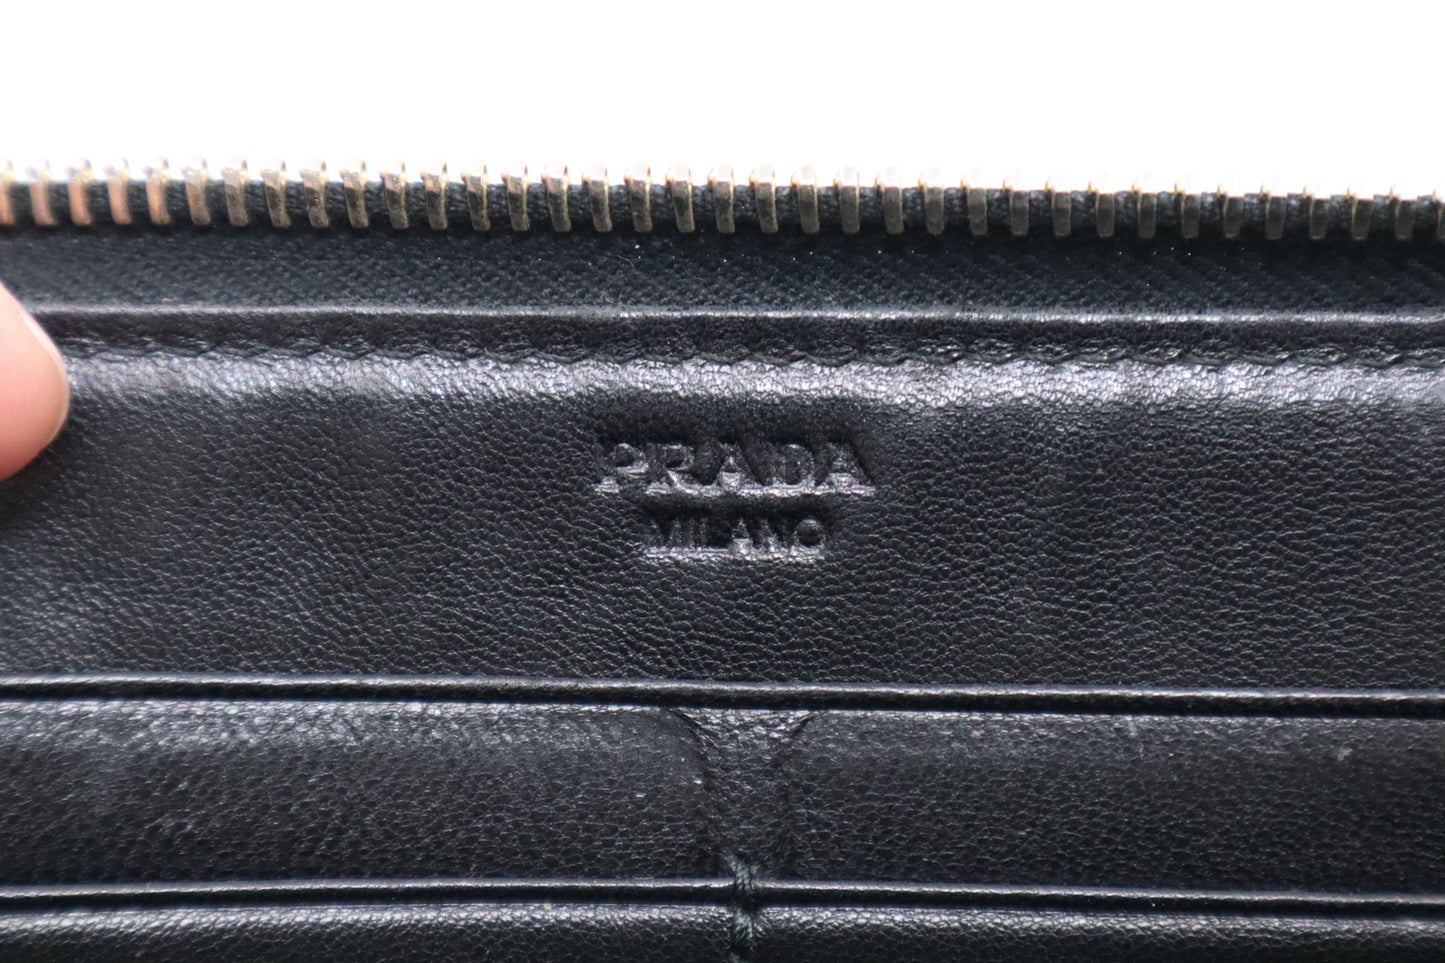 Prada Long Wallet in Black Nylon